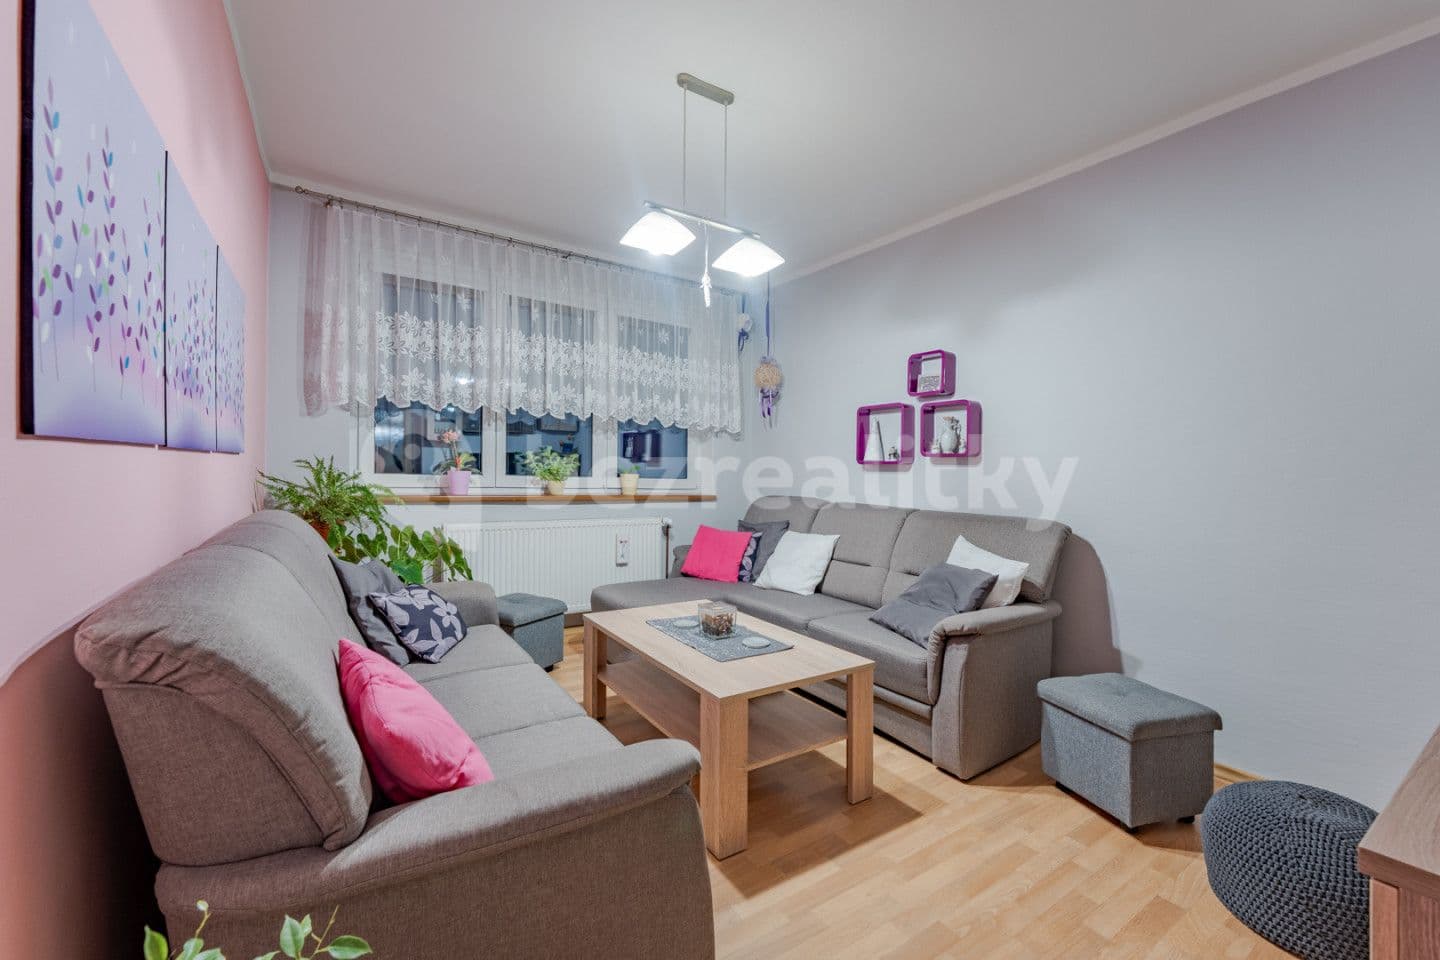 4 bedroom flat for sale, 82 m², Střelná, Zlínský Region